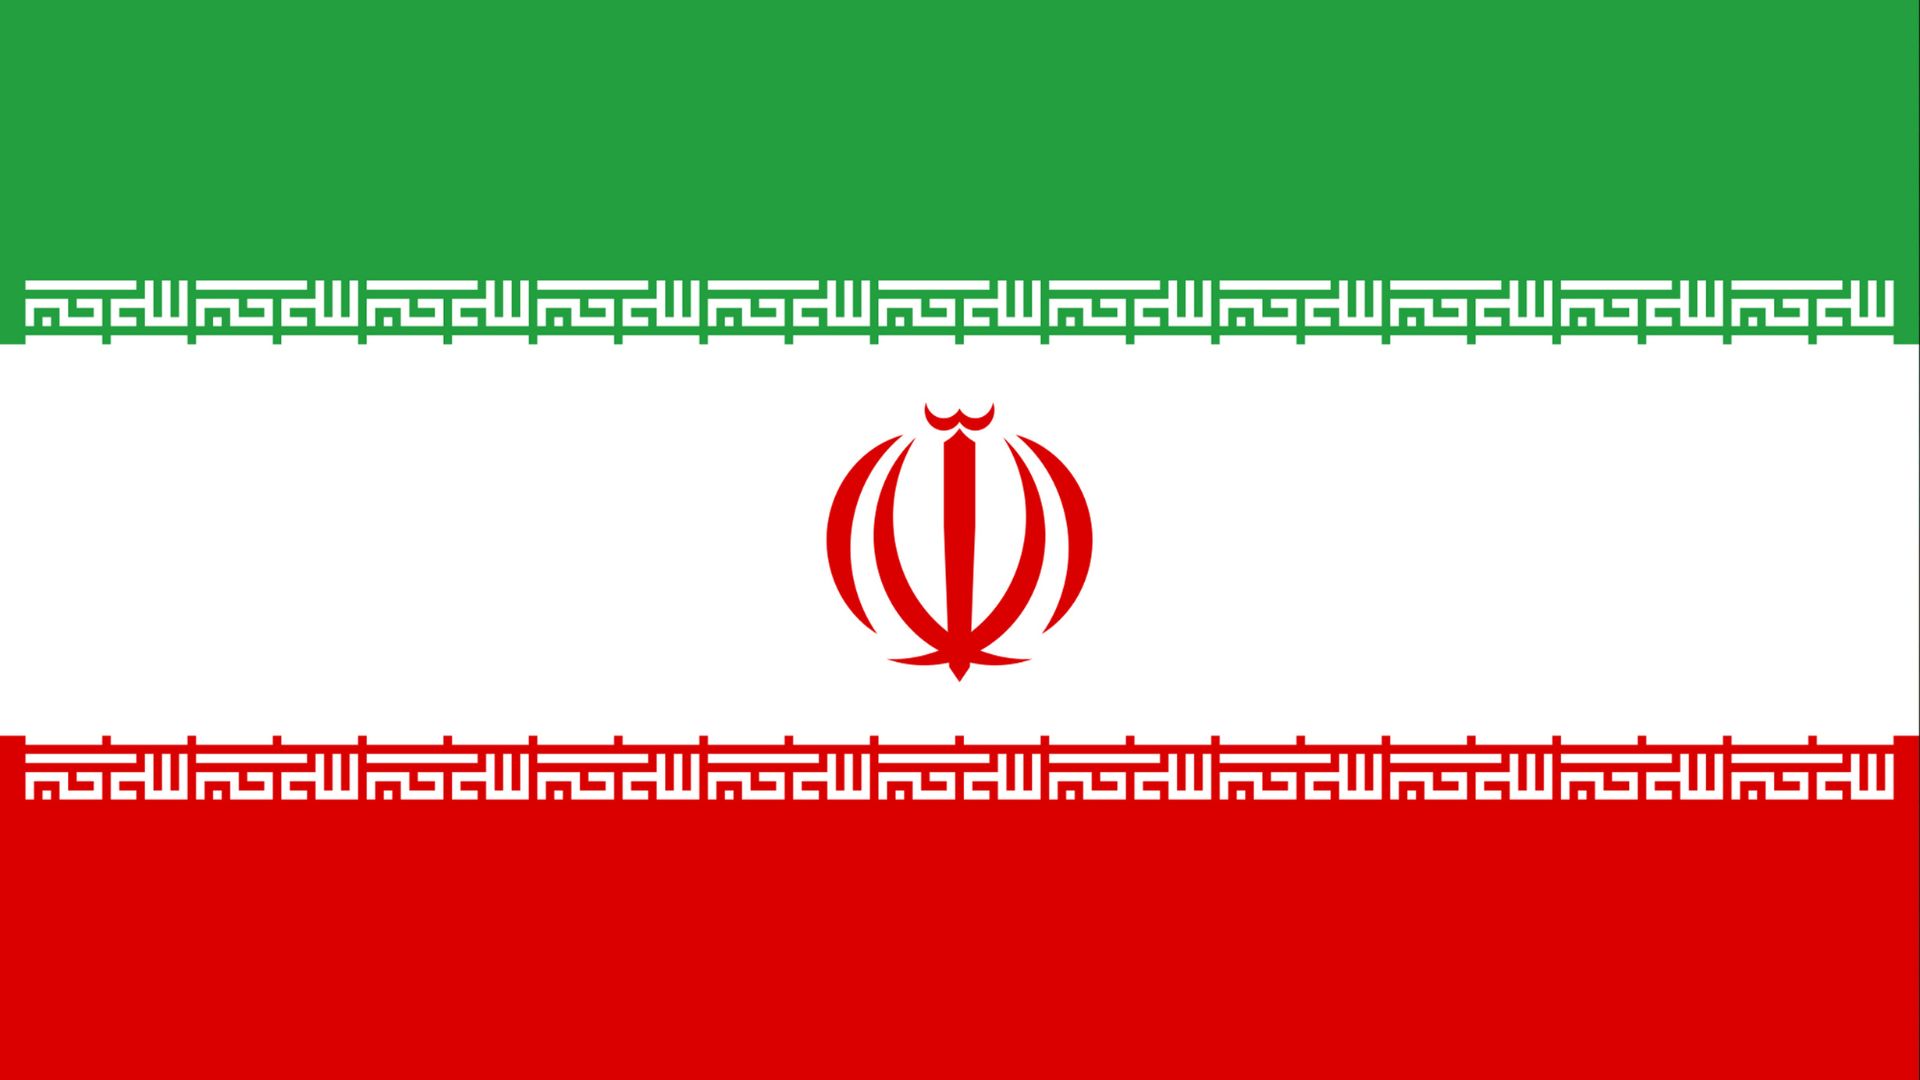 A bandeira do Irã possui três cores: verde, branco e vermelho, dividas em faixas horizontais, nessa ordem. No seu centro tem um símbolo vermelho parecido com uma tulipa.